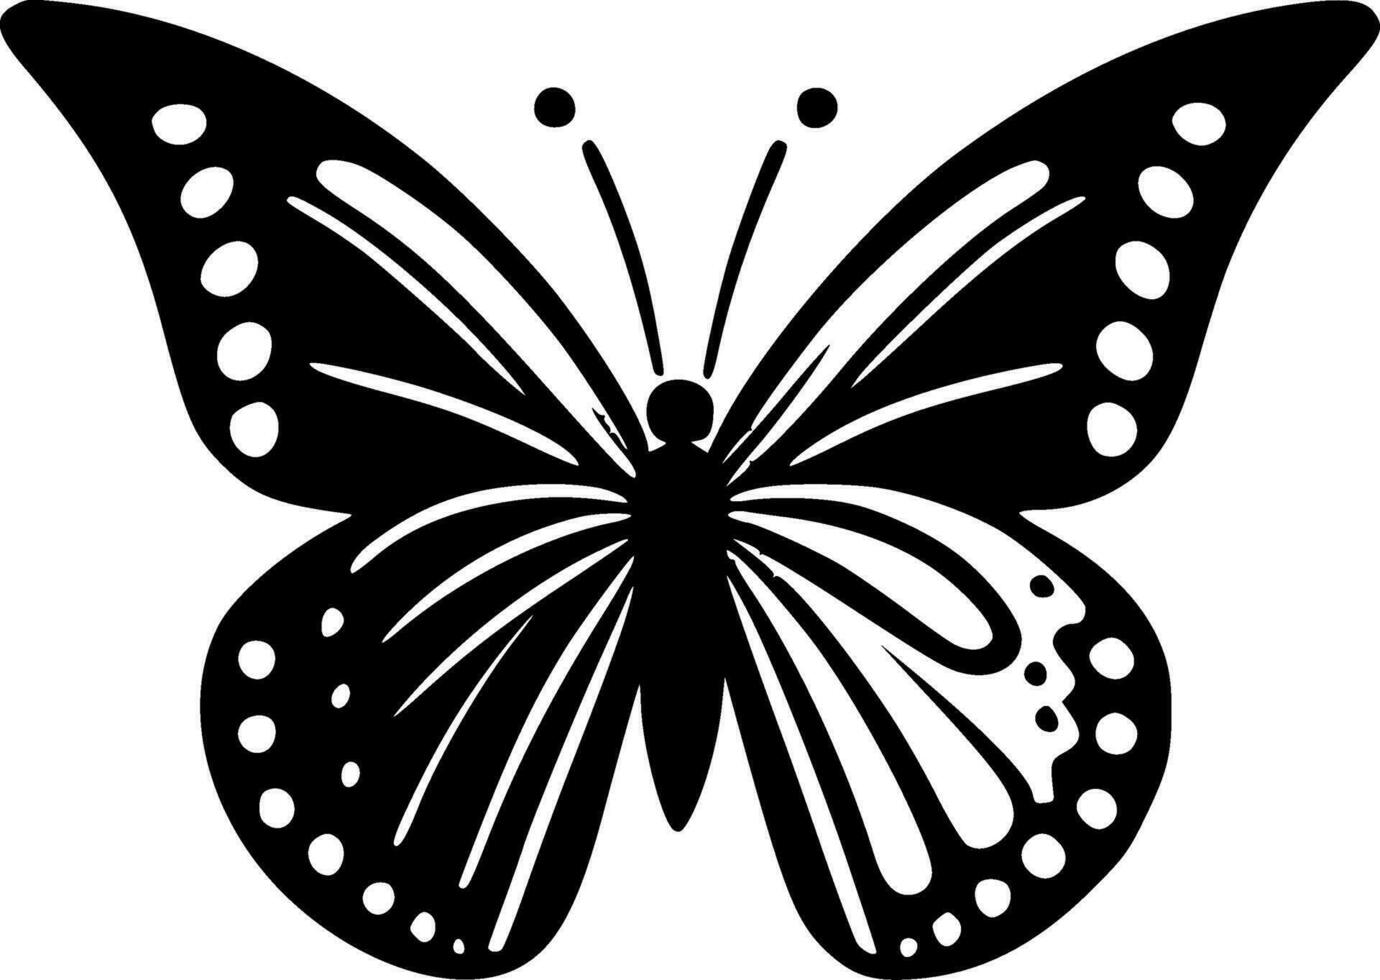 fjäril - svart och vit isolerat ikon - vektor illustration